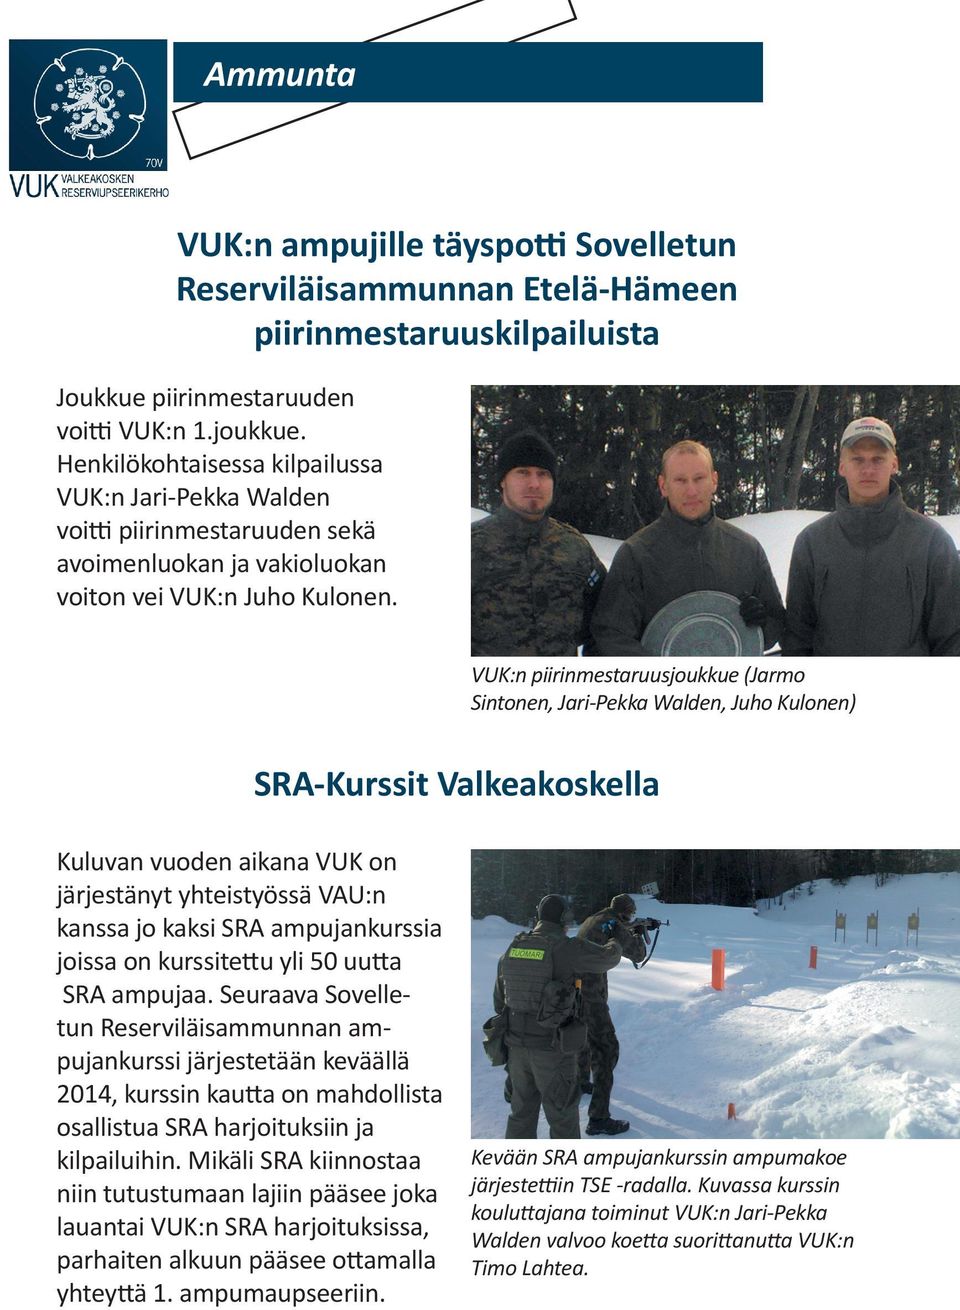 VUK:n piirinmestaruusjoukkue (Jarmo Sintonen, Jari-Pekka Walden, Juho Kulonen) SRA-Kurssit Valkeakoskella Kuluvan vuoden aikana VUK on järjestänyt yhteistyössä VAU:n kanssa jo kaksi SRA